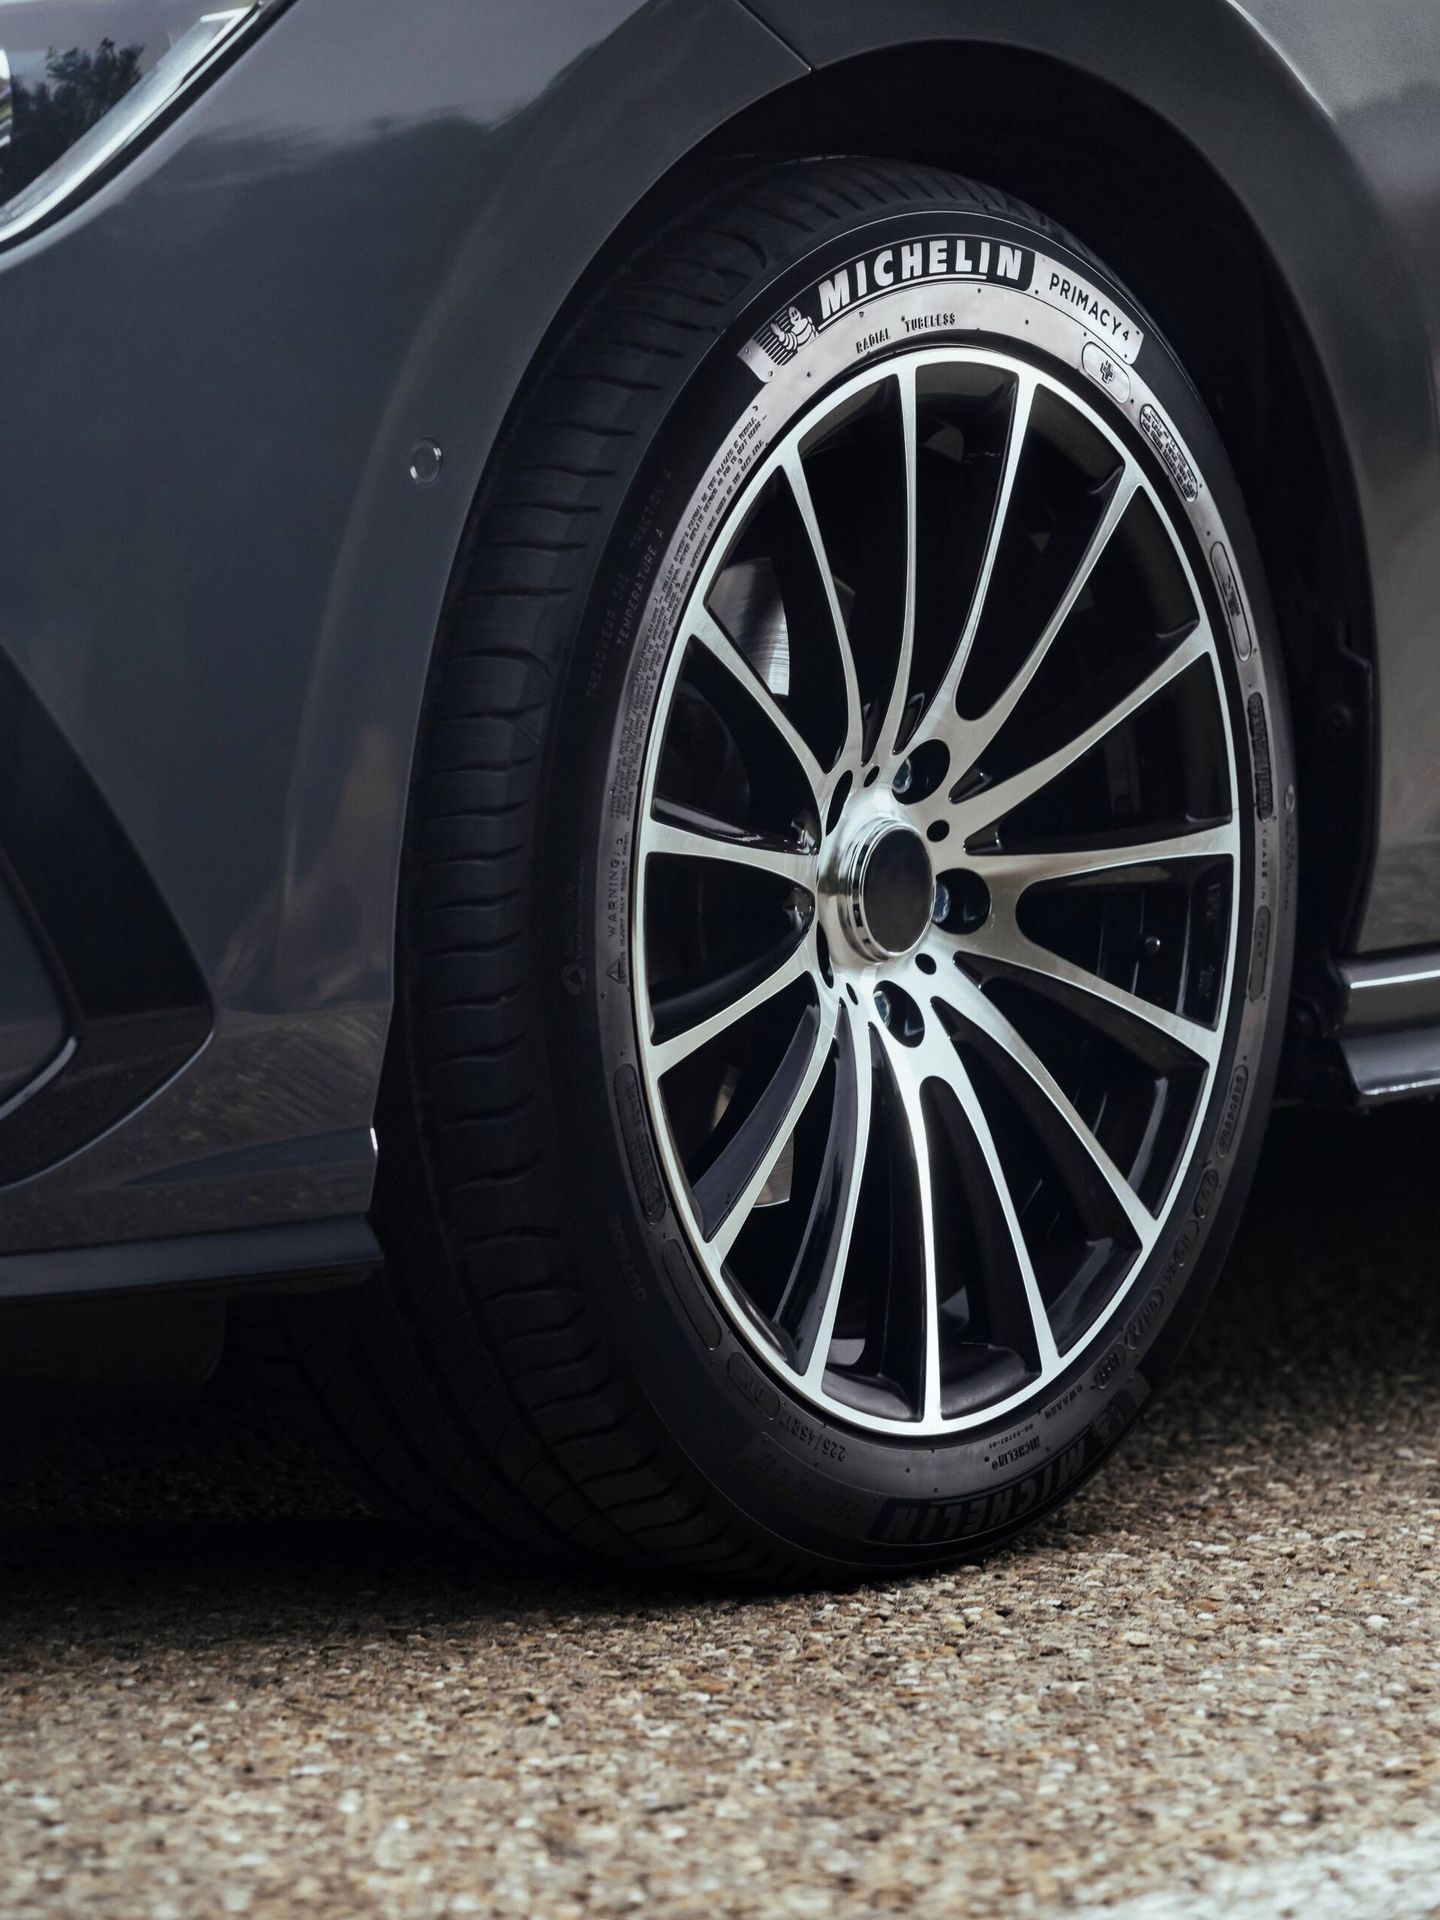 Llevar los neumáticos con poca presión eleva el gasto de carburante entre el 2% y el 4%.